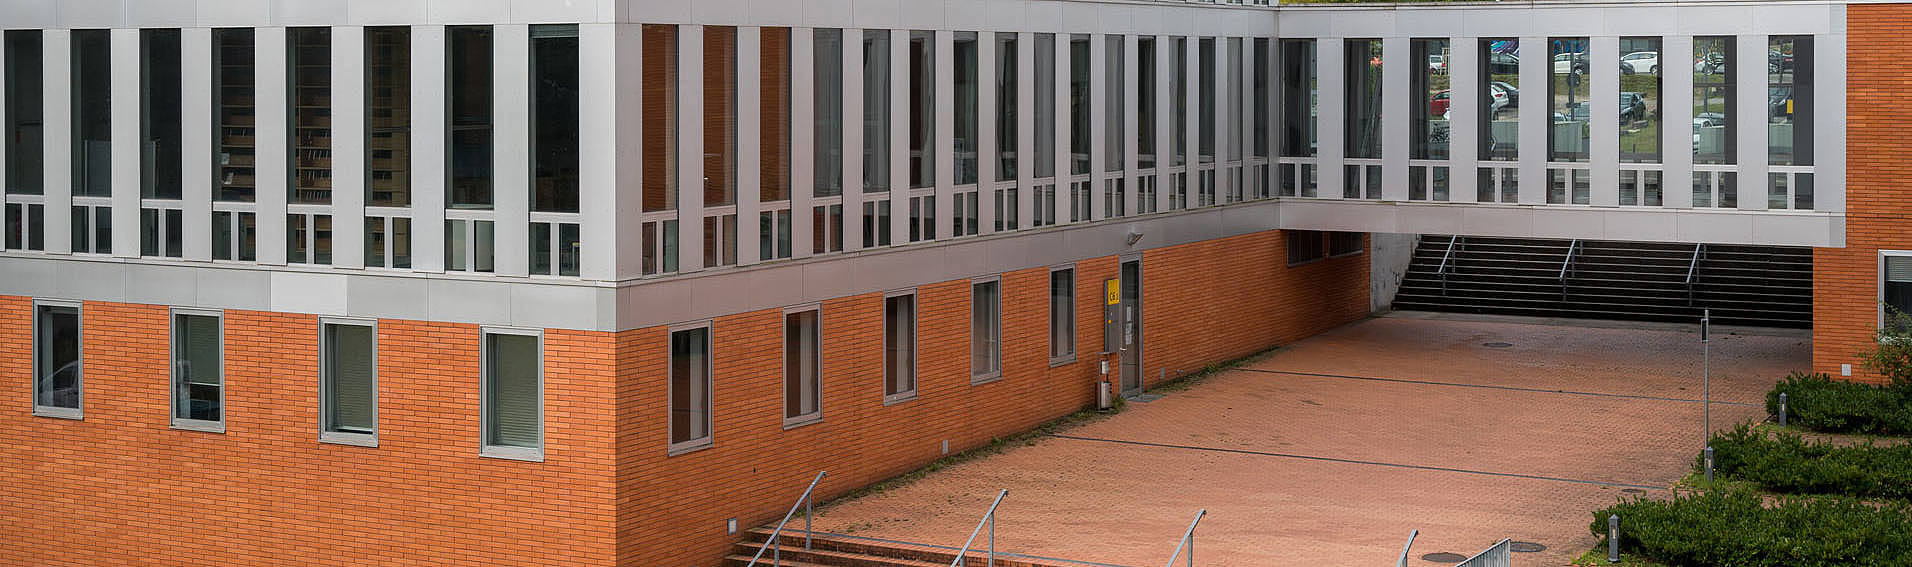 Rückseite des Gebäudes A6 2 auf dem Campus der Universität des Saarlandes